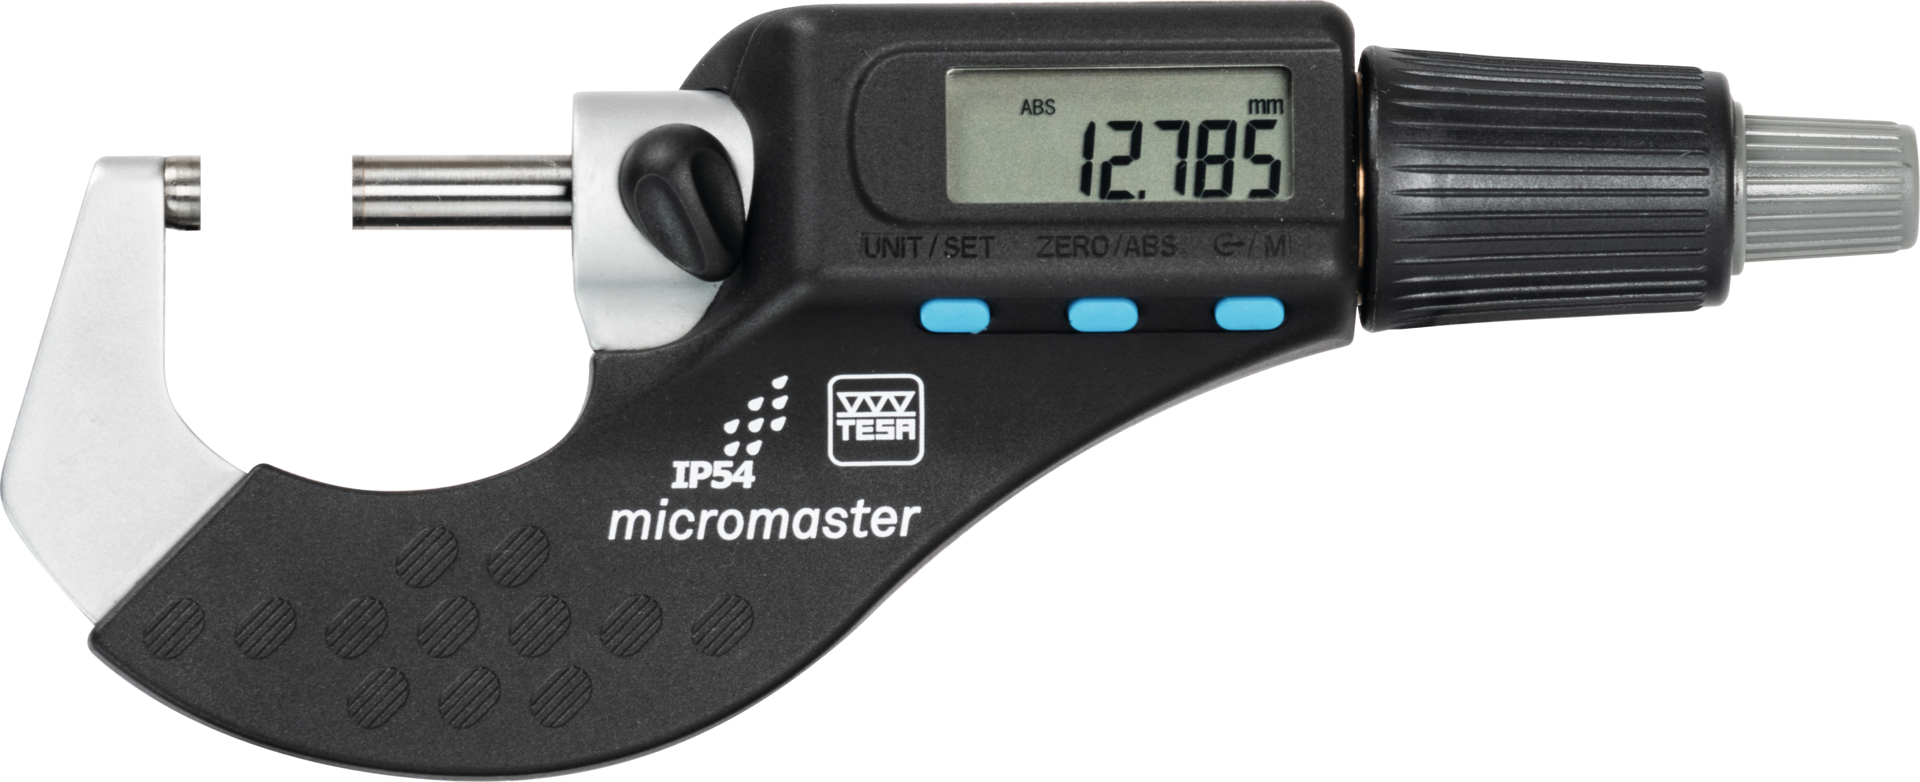 Bügelmessschraube Digital IP54 "micromaster" Abl. 0,001mm mit SCS-Kalibriersch. DIN863-1 mit DA MB0-30mm